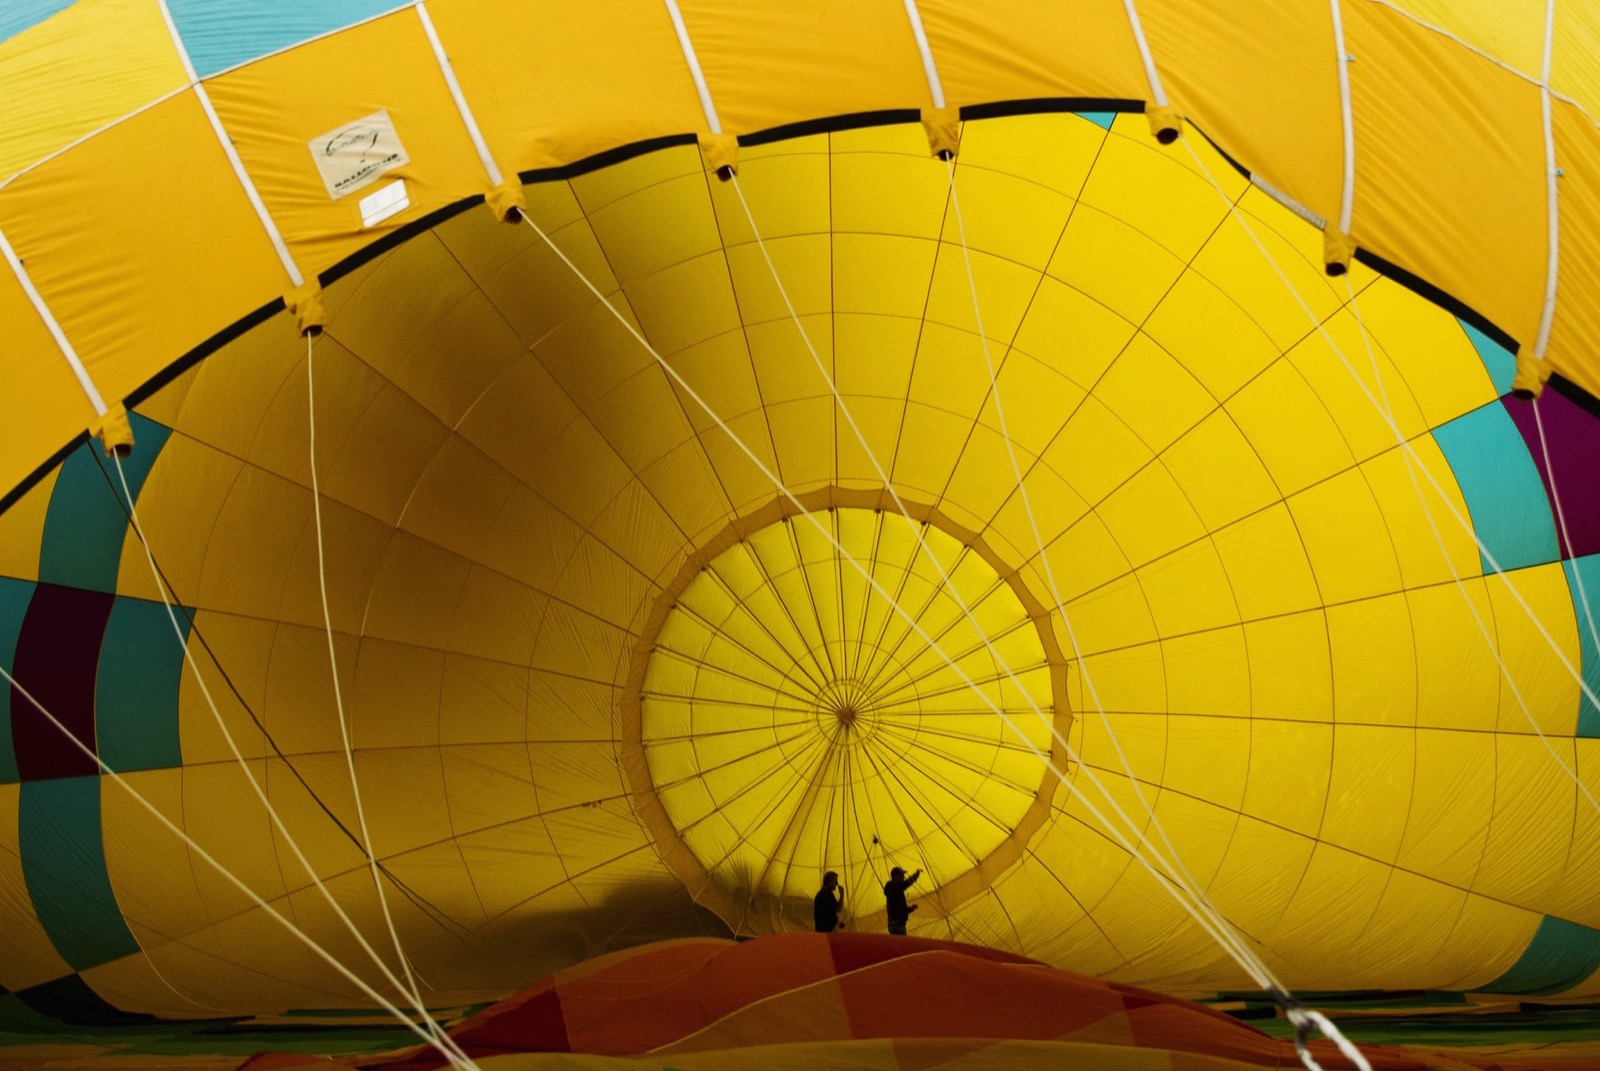 Nhìn ảnh này bạn sẽ tưởng tượng được độ khổng lồ của một chiếc khí cầu, trong hình là 2 người đàn ông đang bước vô trong lòng khí cầu để kiểm tra xem có bị rò rỉ, sứt chỉ gì hay không. Ảnh chụp bởi Lucas Jackson.